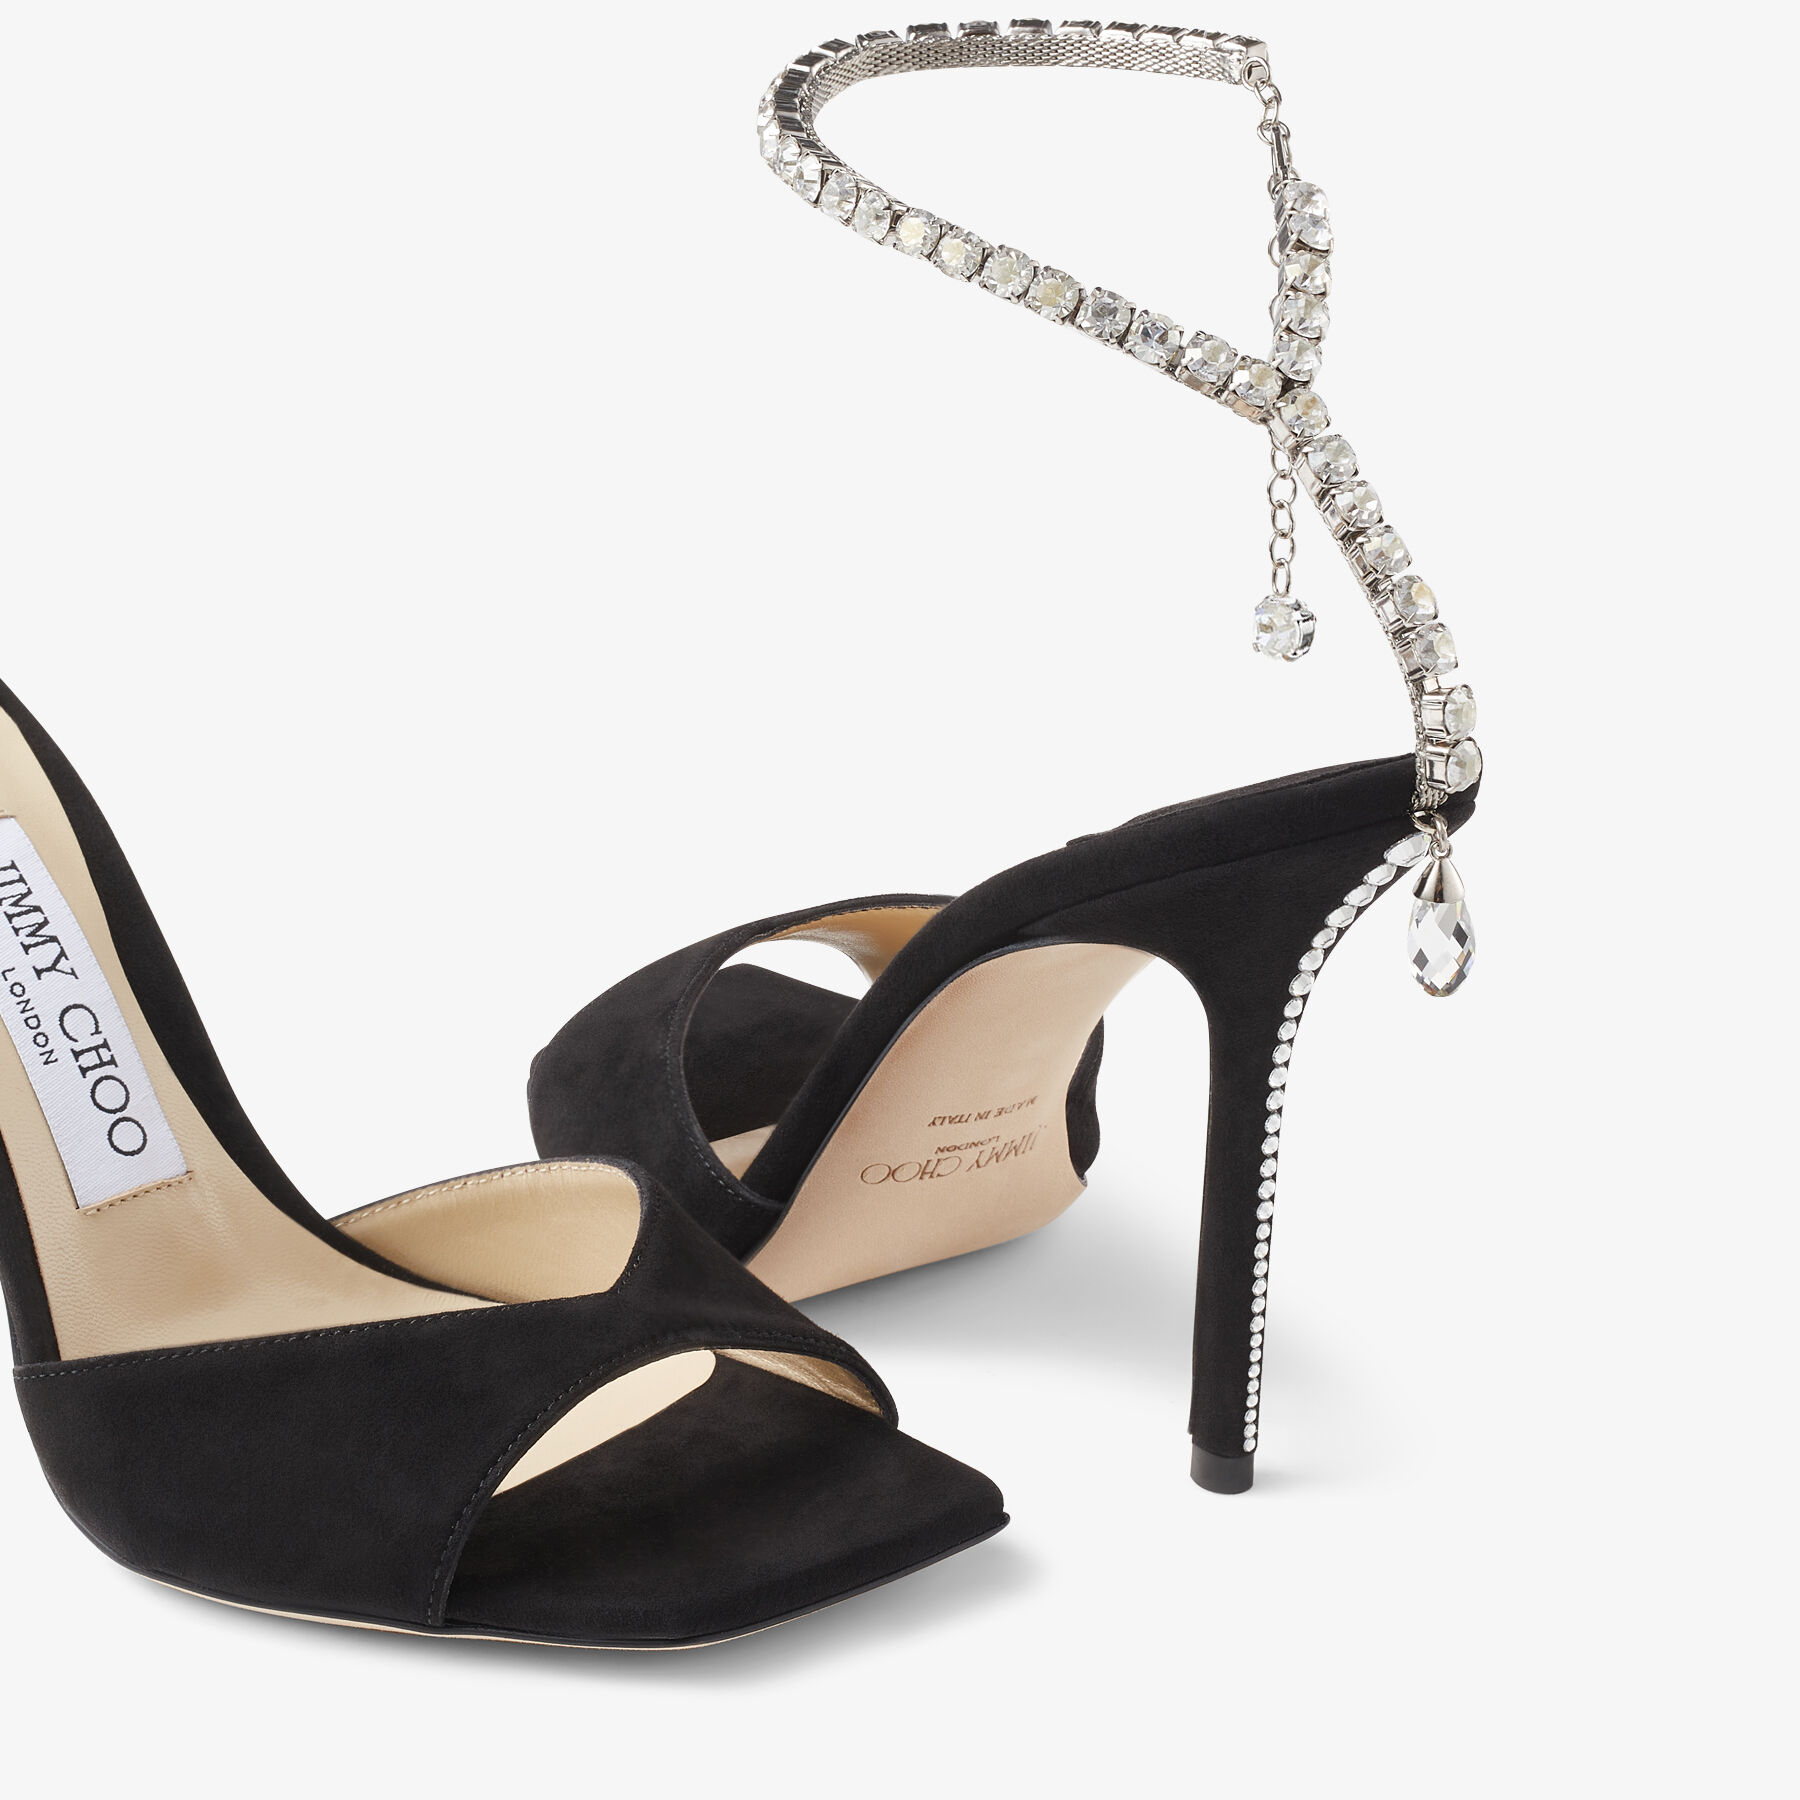 SAEDA SANDAL 100 | Black Suede Sandals with Crystal Embellishment ...